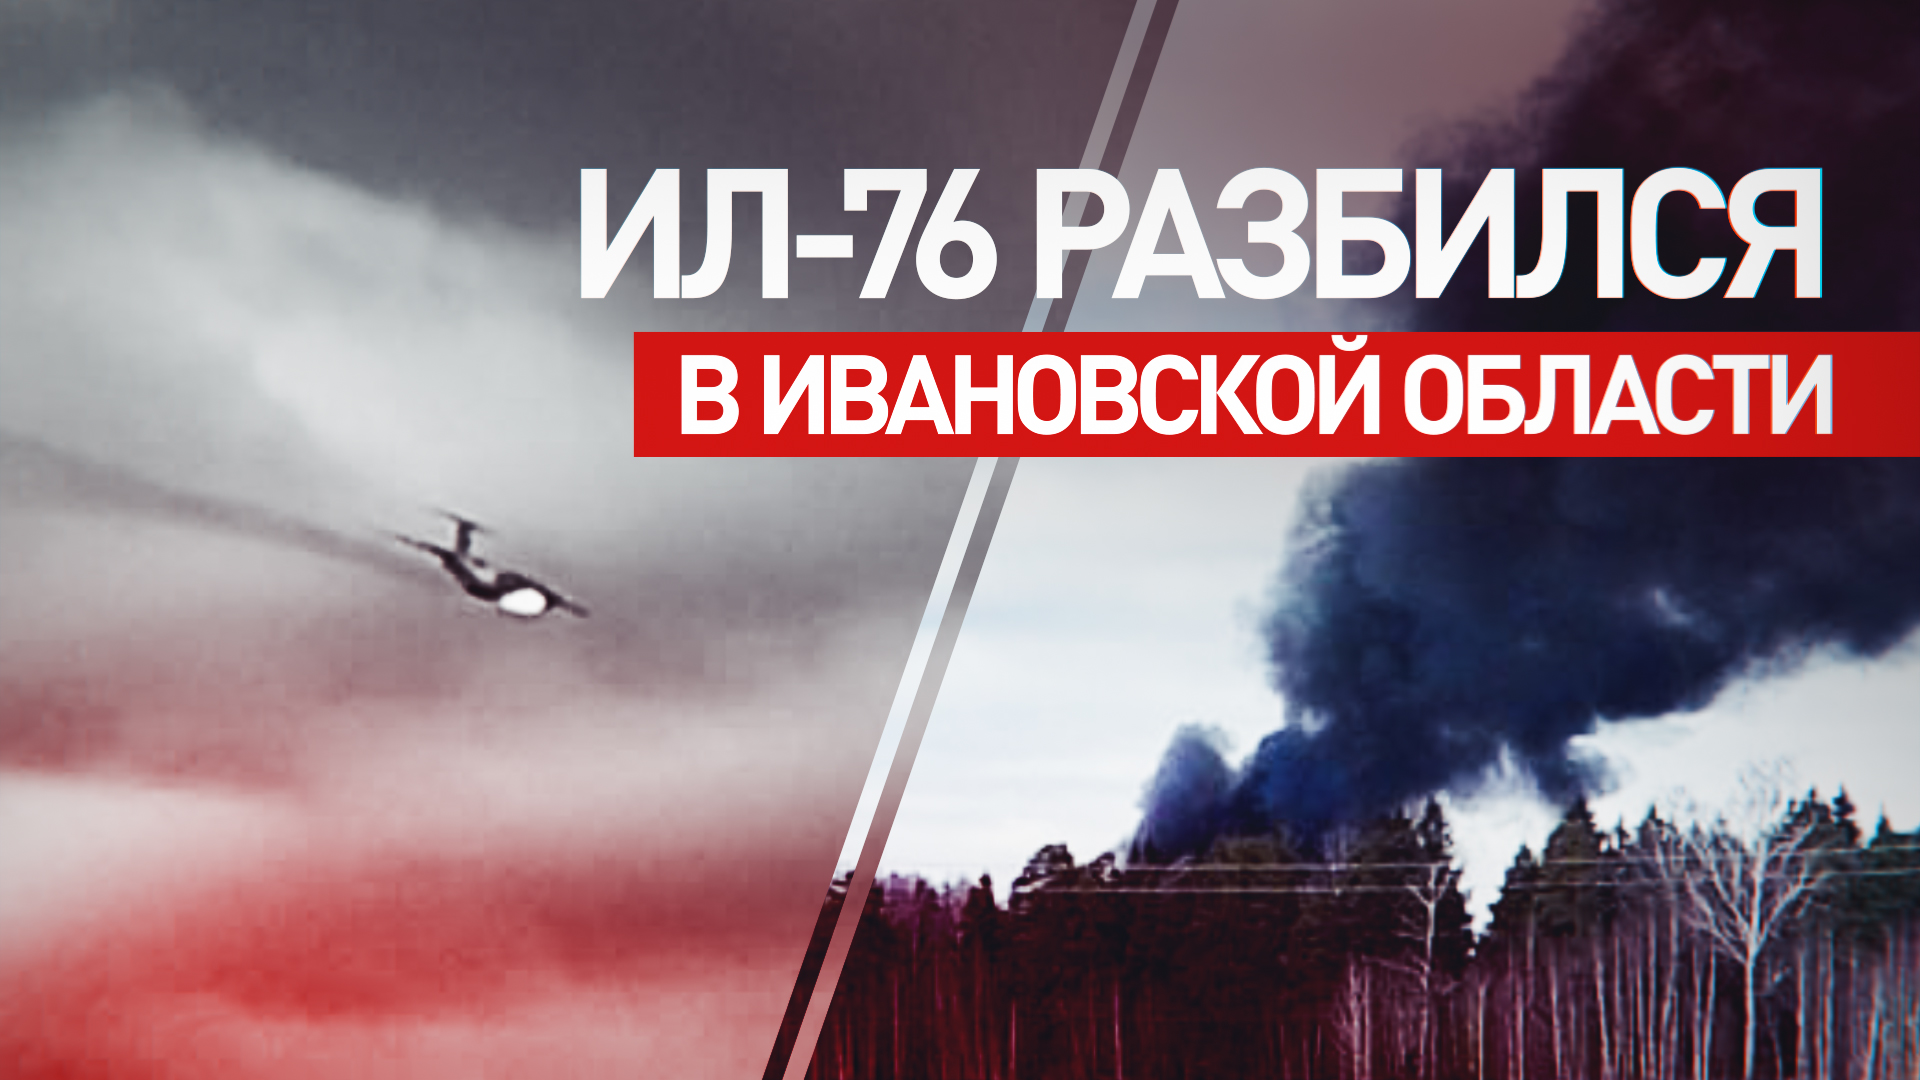 Военный самолёт Ил-76 потерпел крушение при взлёте в Ивановской области